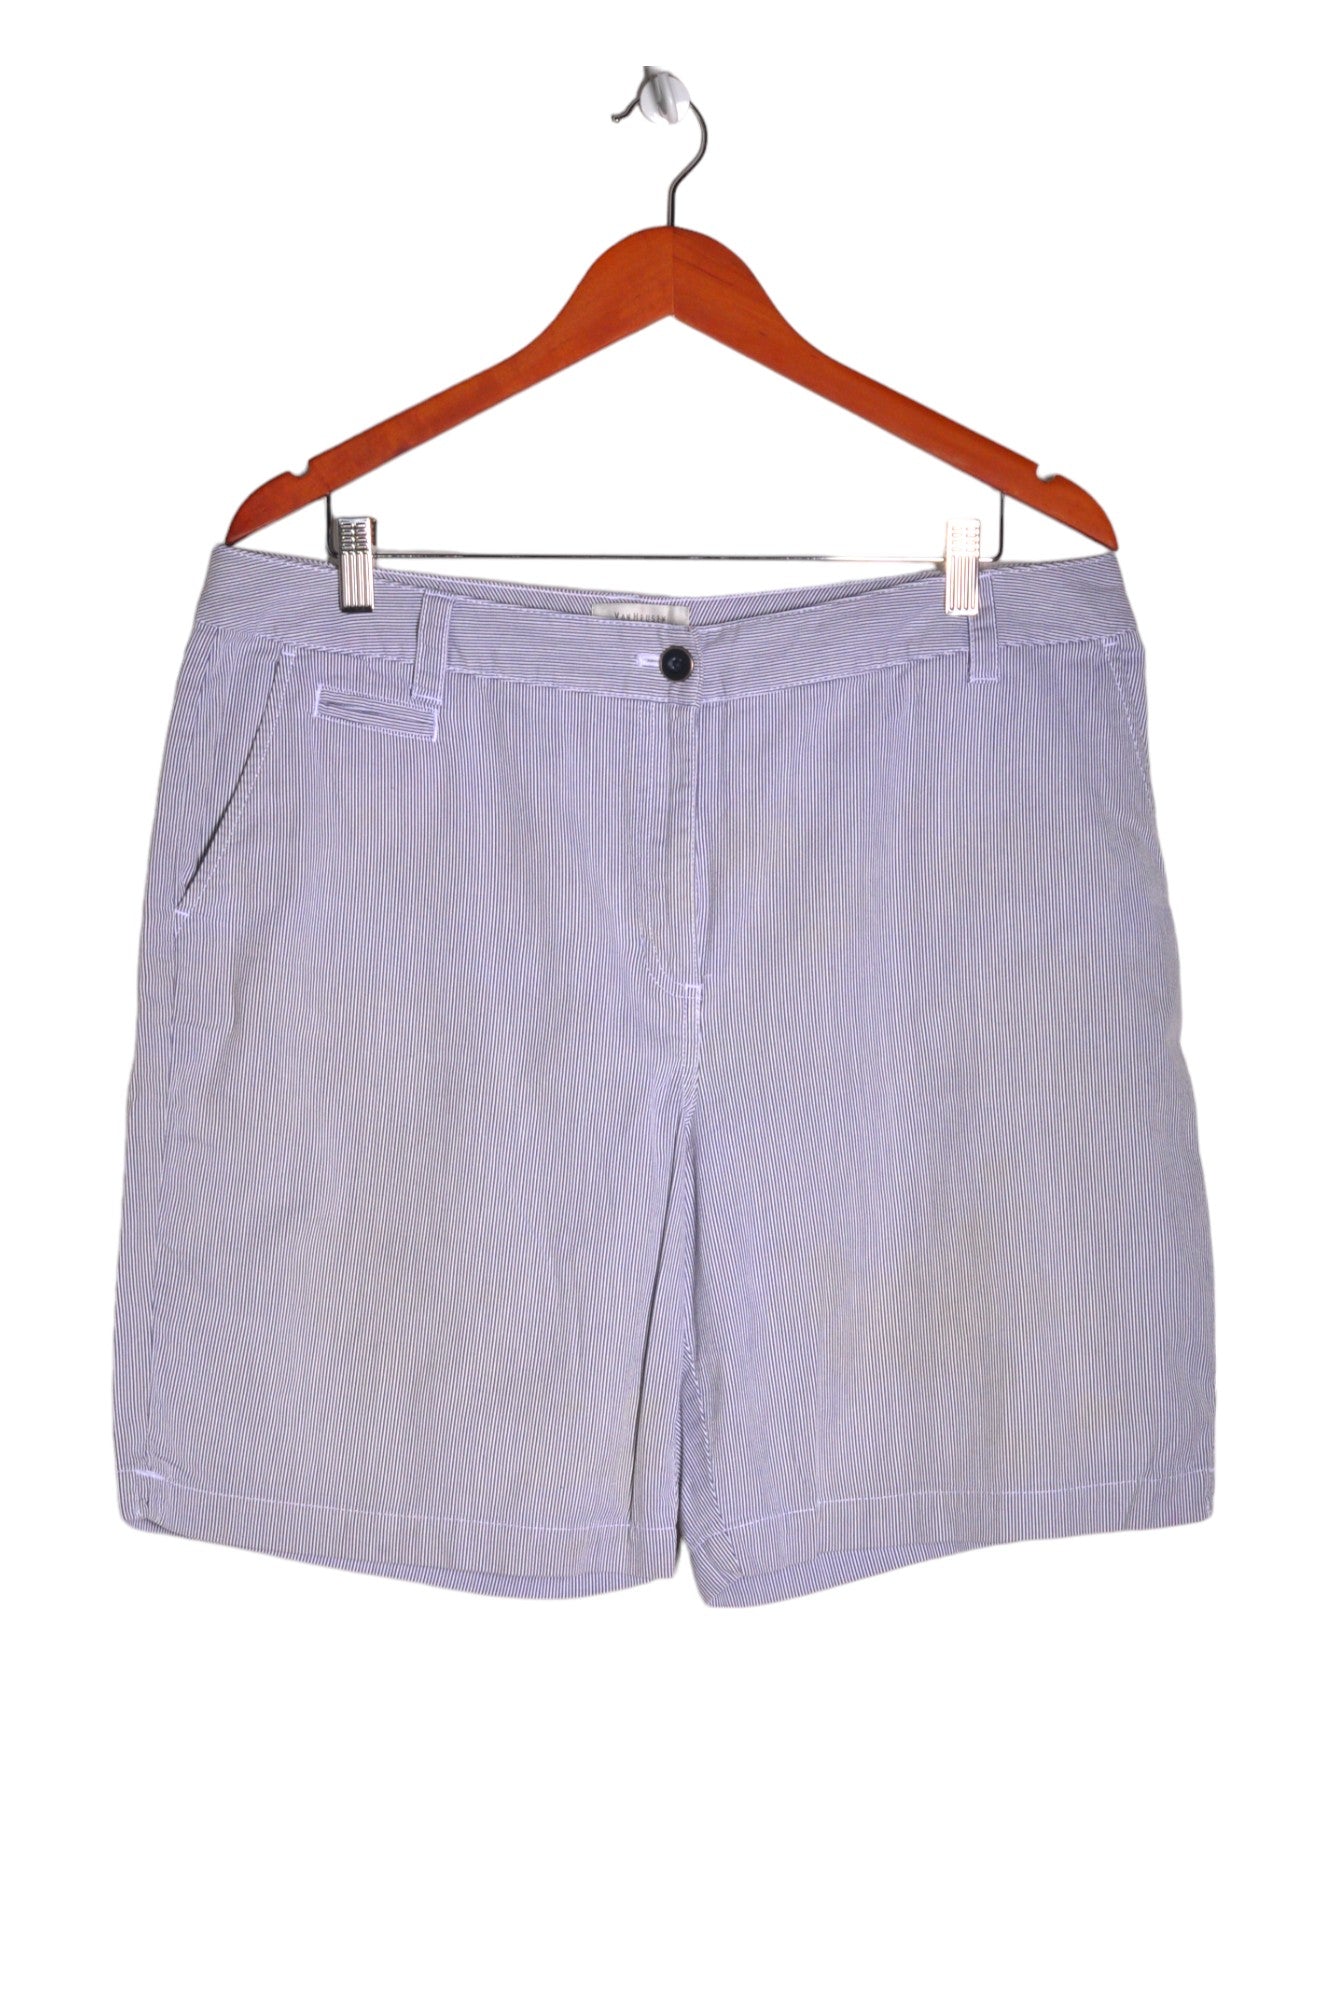 VAN HEUSEN Men Classic Shorts Regular fit in White - Size 14 | 17.19 $ KOOP